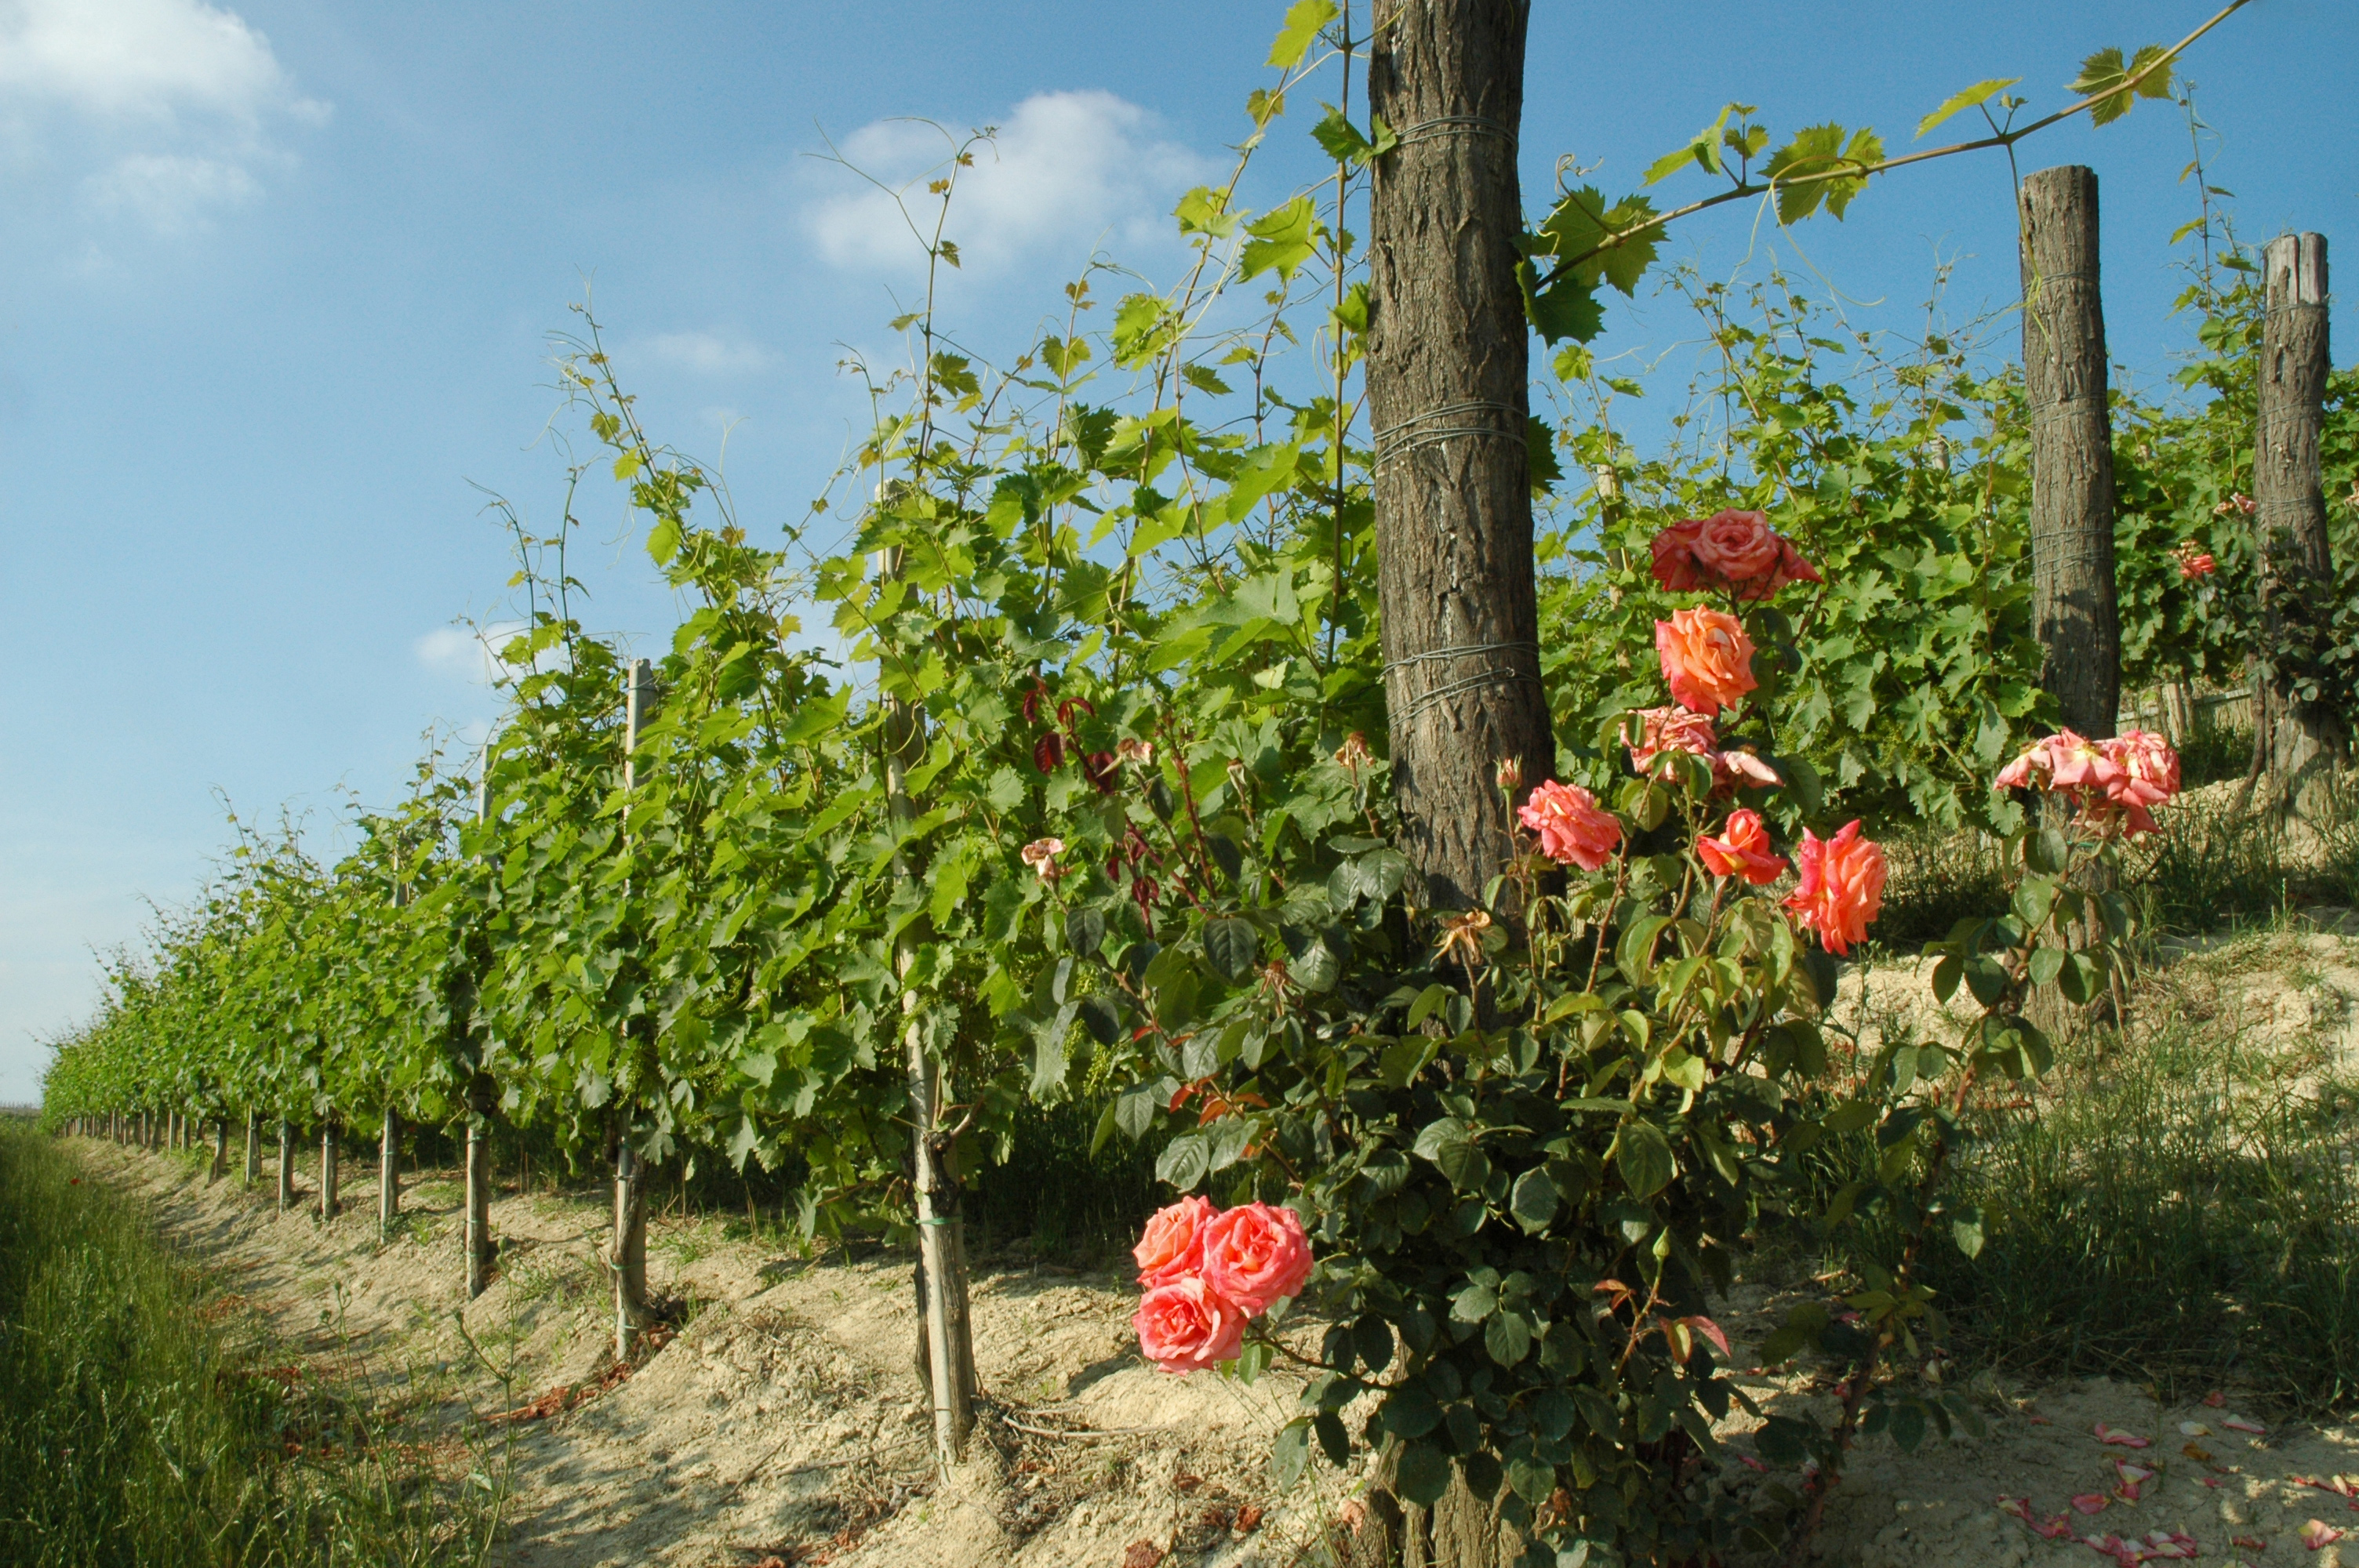 Alle Marenco-vingårder blir dyrket med bondesensibiliteten til våre besteforeldre og et innovativt engasjement for bærekraftig landbruk.
Selv selskapets logo, to ville stokkender i flukt, ble inspirert av vår jord, innsjøen på Bassina Estate i Fontanile.
Alle Marenco-vinene blir produsert med innfødte druer dyrket i våre vingårder og tappet på eiendommen. Hvert valg styres av ønsket om å lage viner som uttrykker det landet de kommer fra, viner anerkjent for sin enestående kvalitet, viner som kan følge og vekke følelser.